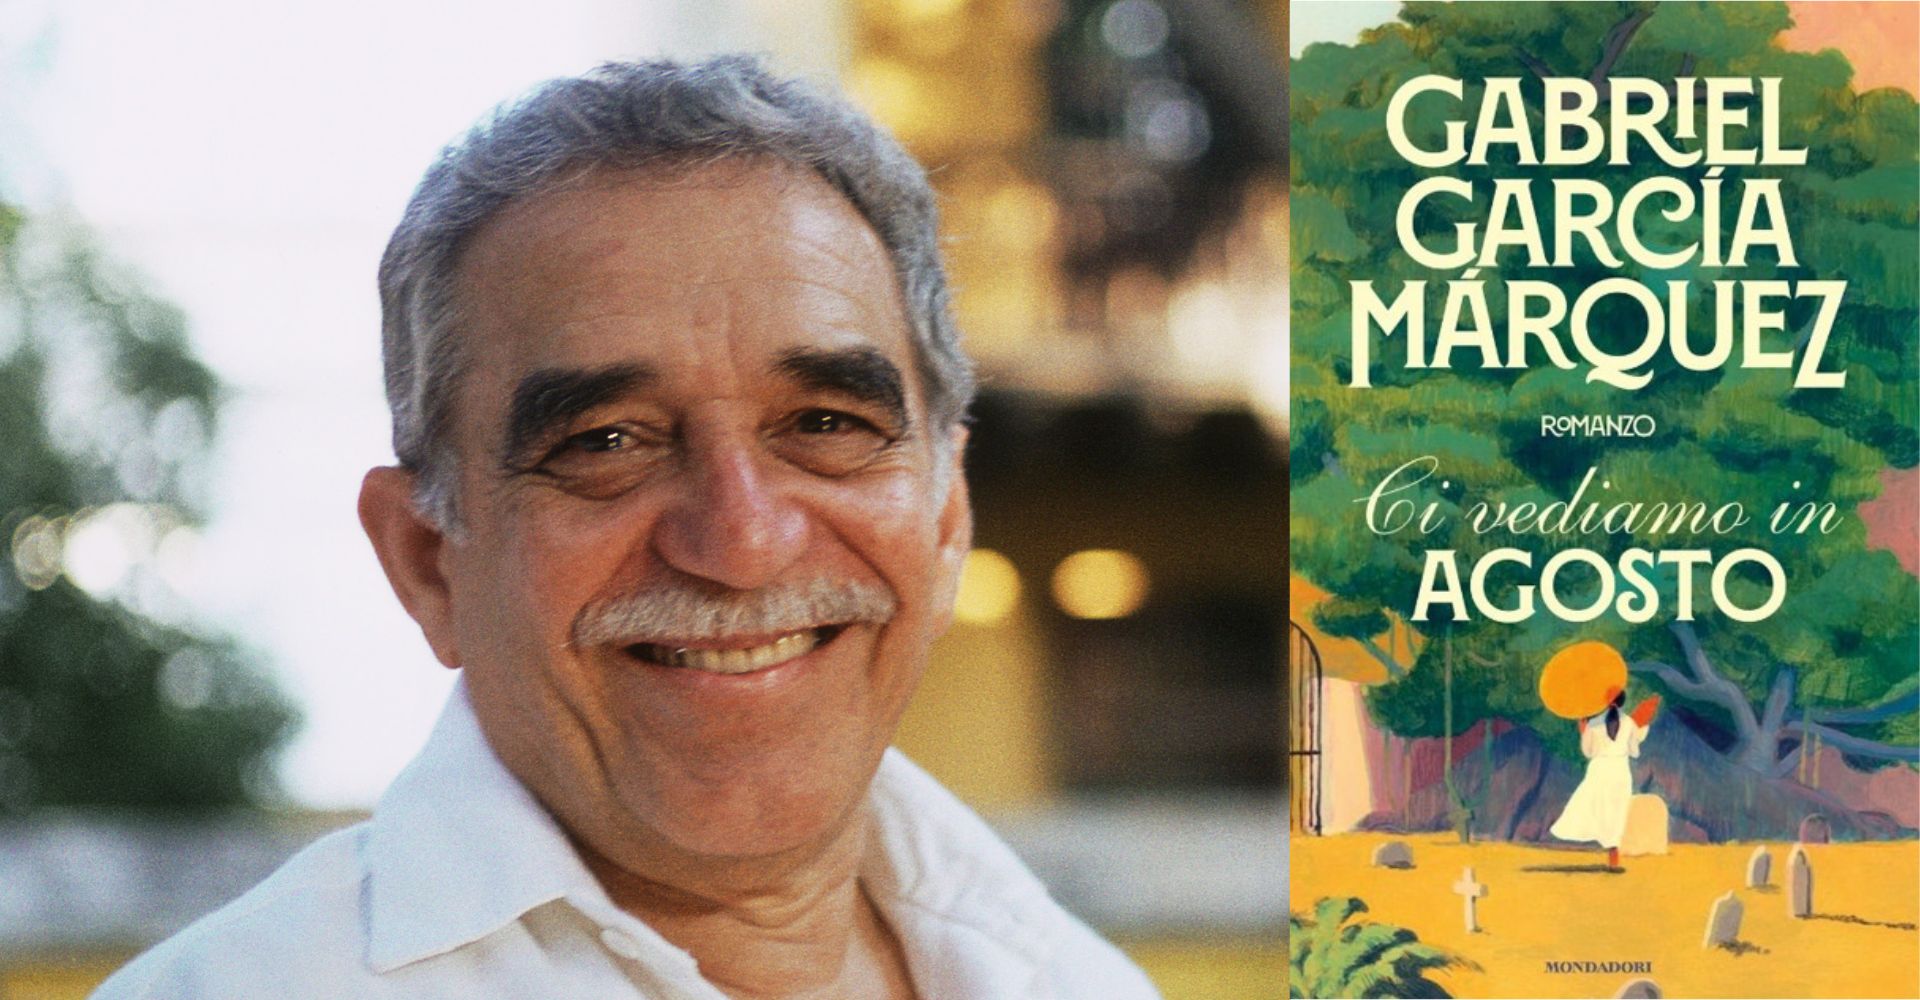 Ci vediamo in agosto di Gabriel Garcia Marquez